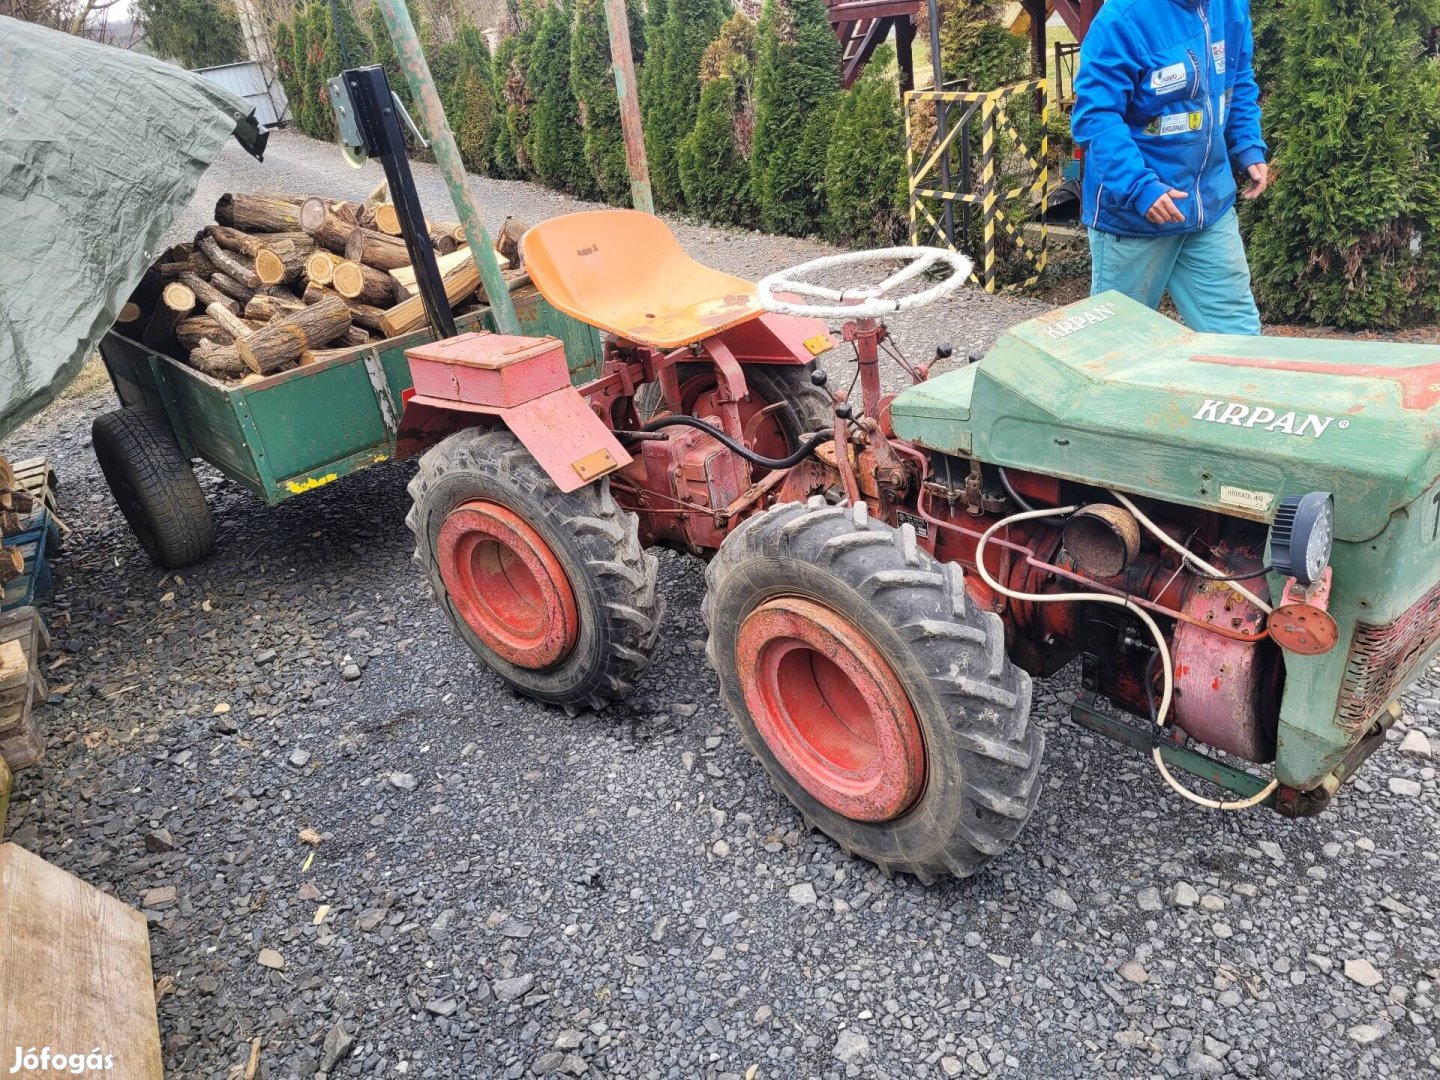 Tomovinkovic Pe18  összkerekes traktor Eladó